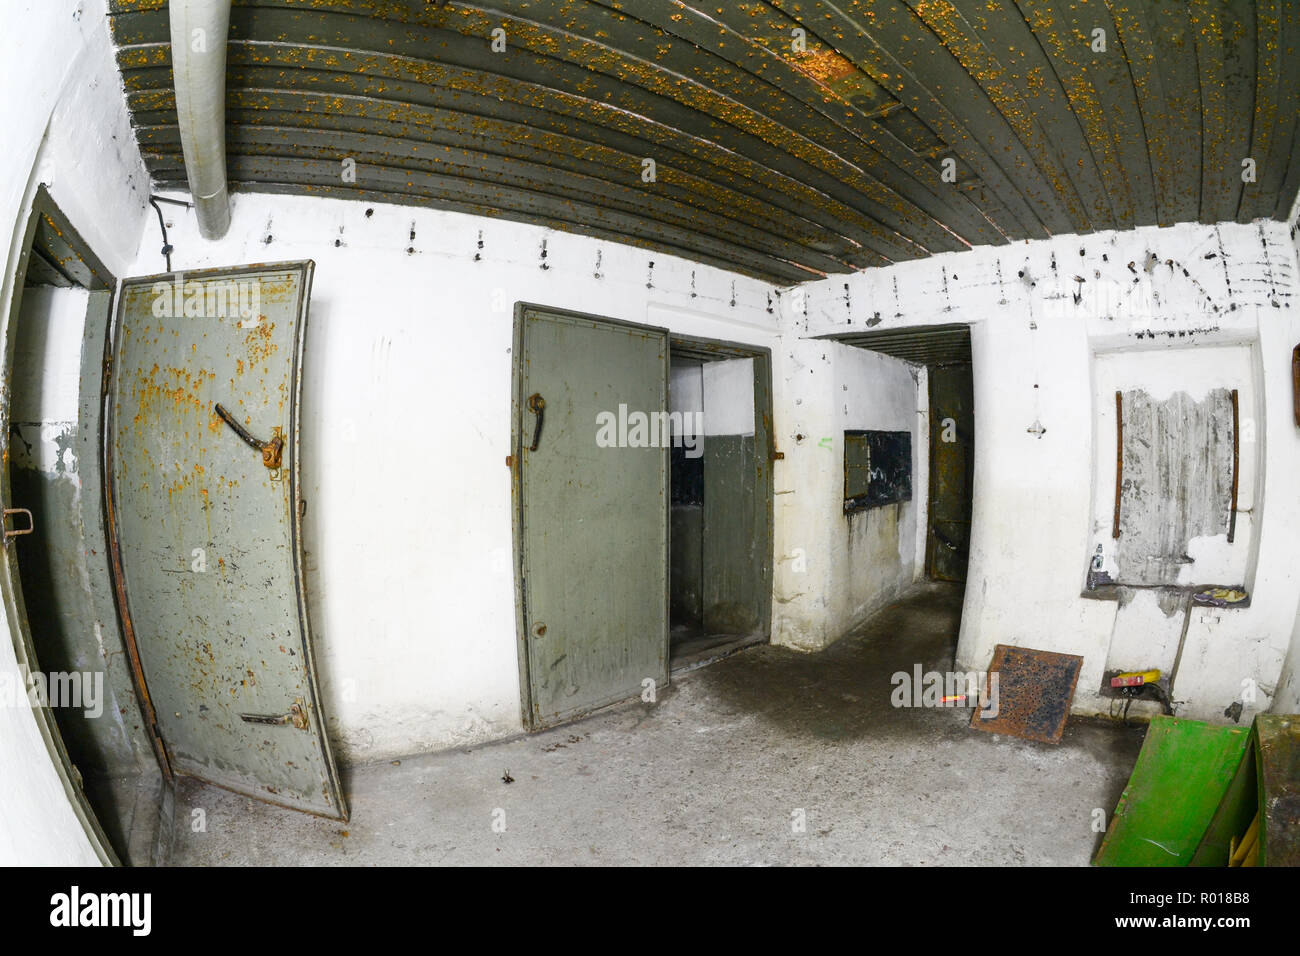 Abandonné et dévasté de l'intérieur de la fortification de défense côtière de la guerre froide dans l'hôtel, la Pologne. Banque D'Images